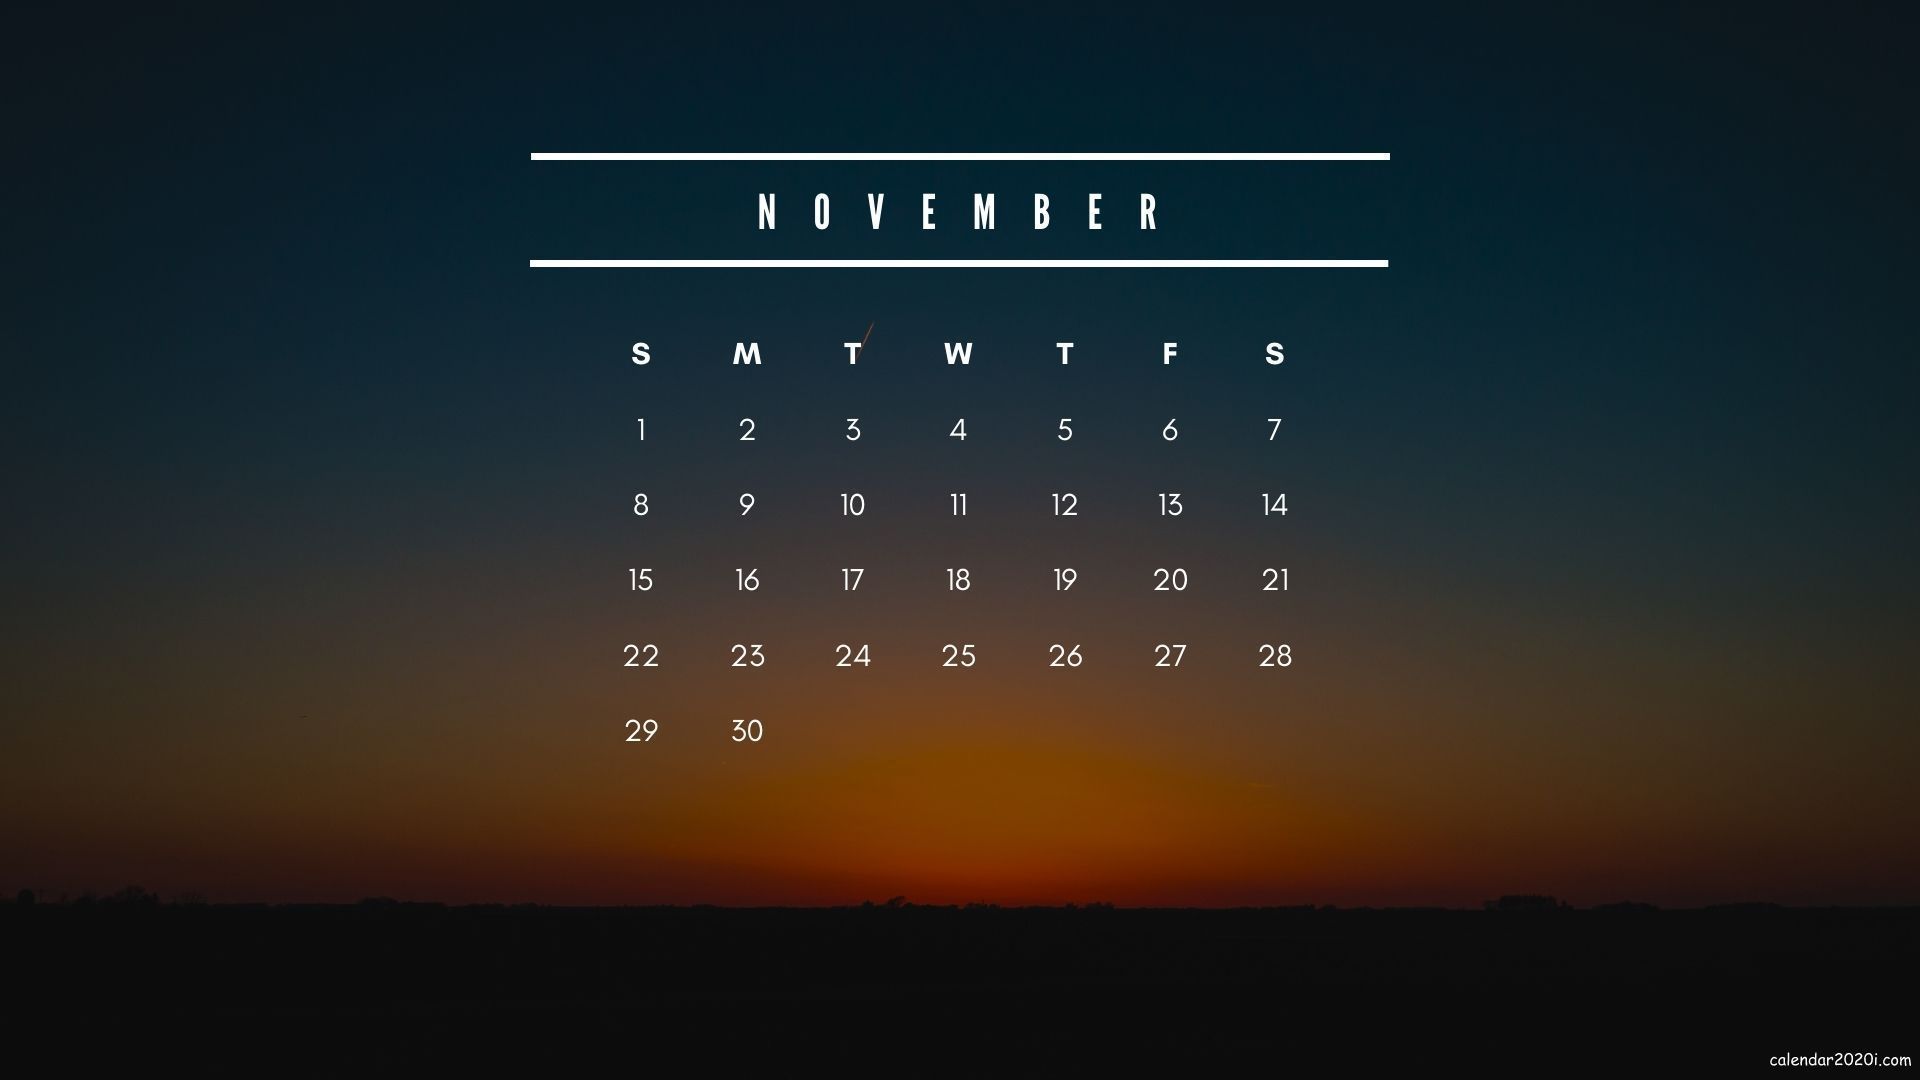 November 2020 Calendar Wallpaper for desktop background screen. Calendar wallpaper, Desktop calendar, Calendar